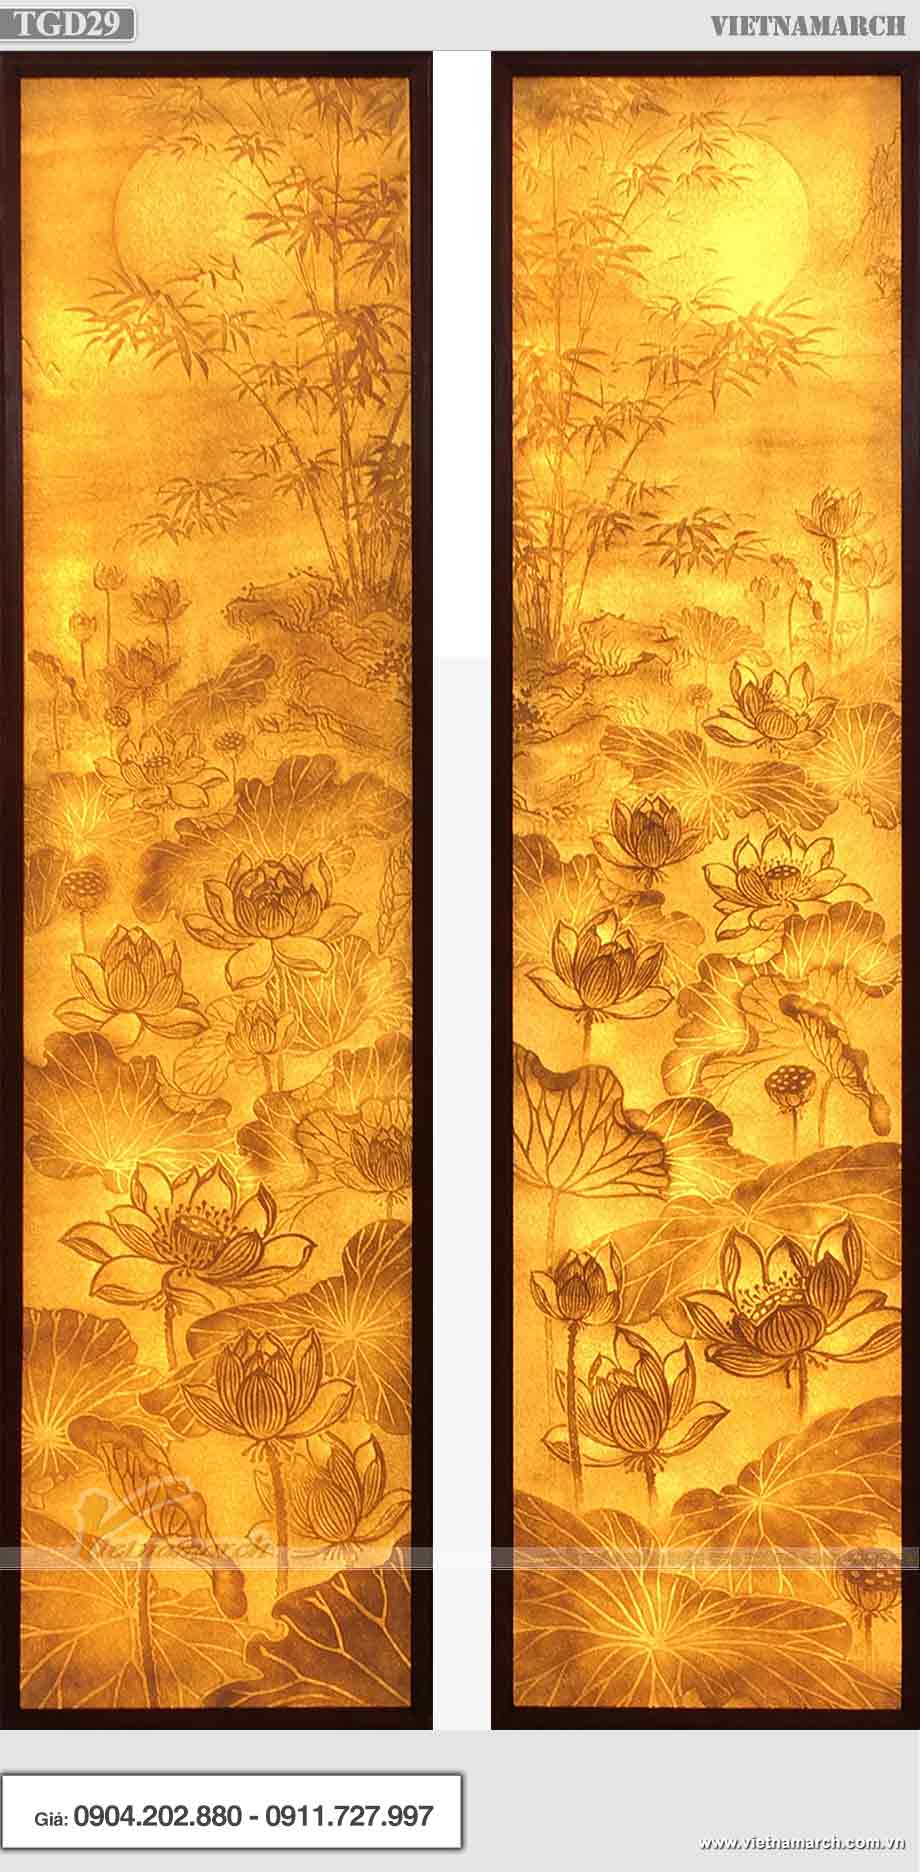 Tranh giấy dừa hoa sen hình chữ nhật chính hãng cực đẹp! > Tranh giấy dừa hoa sen hình chữ nhật đứng